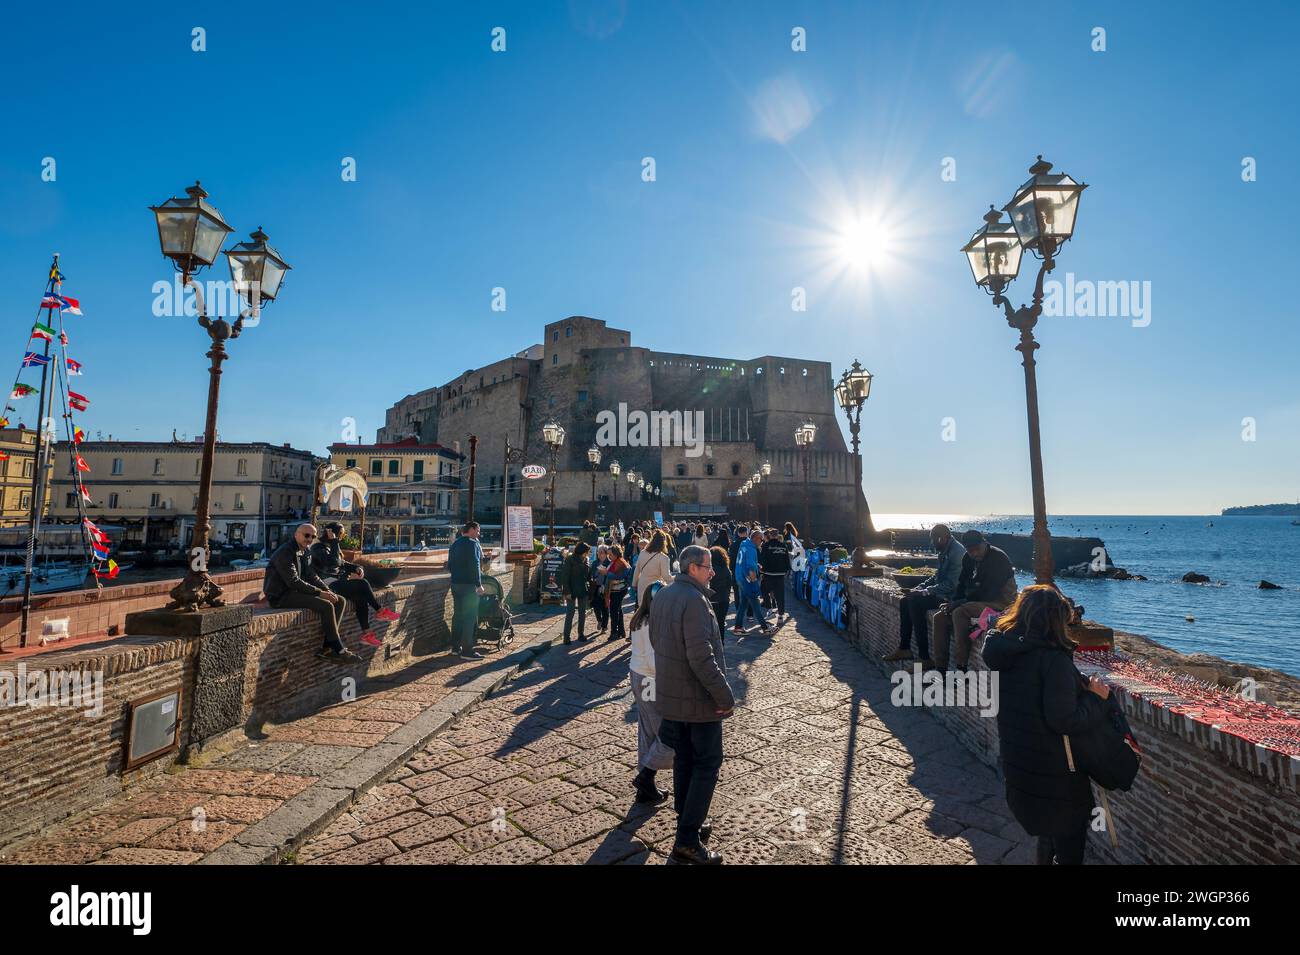 Neapel, Italien - 18. Dezember 2022: Überfüllte Brücke, die zum majestätischen Stein der Burg Ovo führt, steht stolz auf einer felsigen Insel. Das berühmte Castel dell'Ovo ist ein Juwel Stockfoto